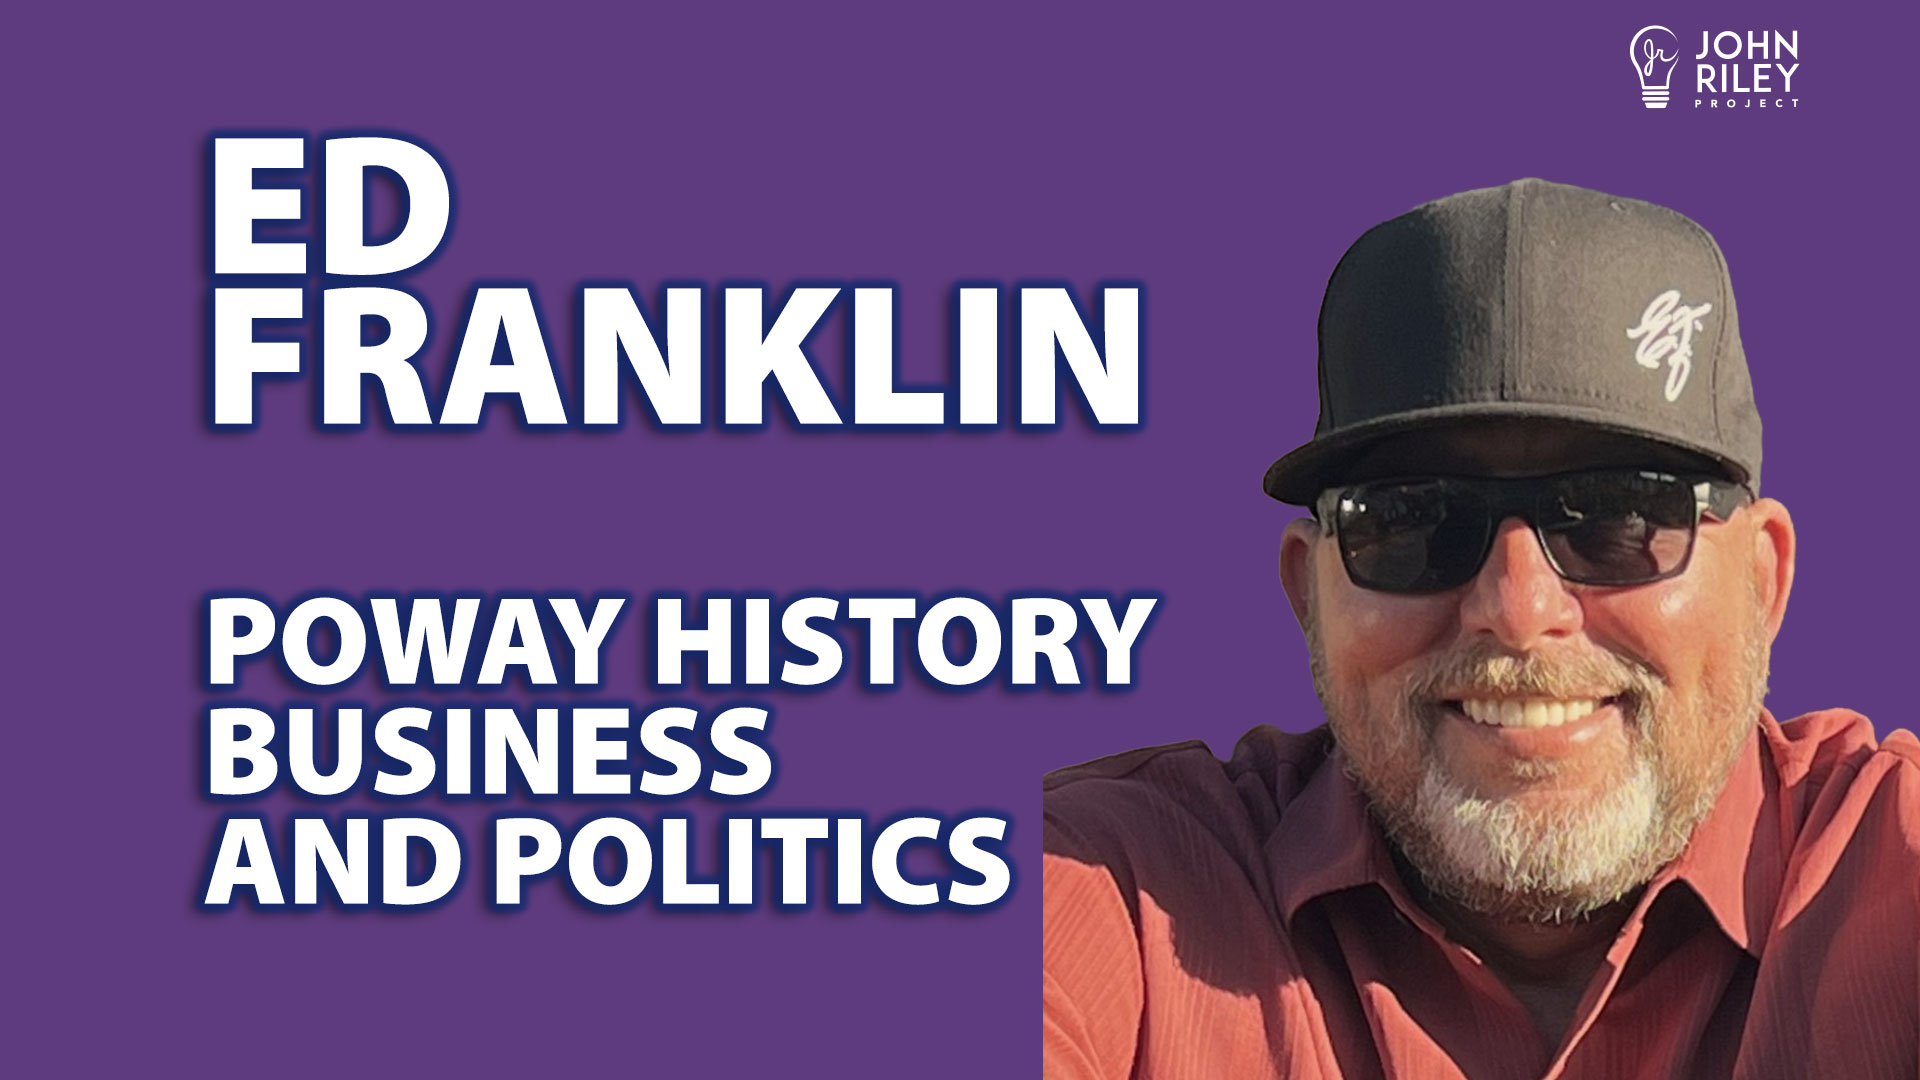 Poway History, Ed Franklin, Poway Business, poway politics, John Riley Project